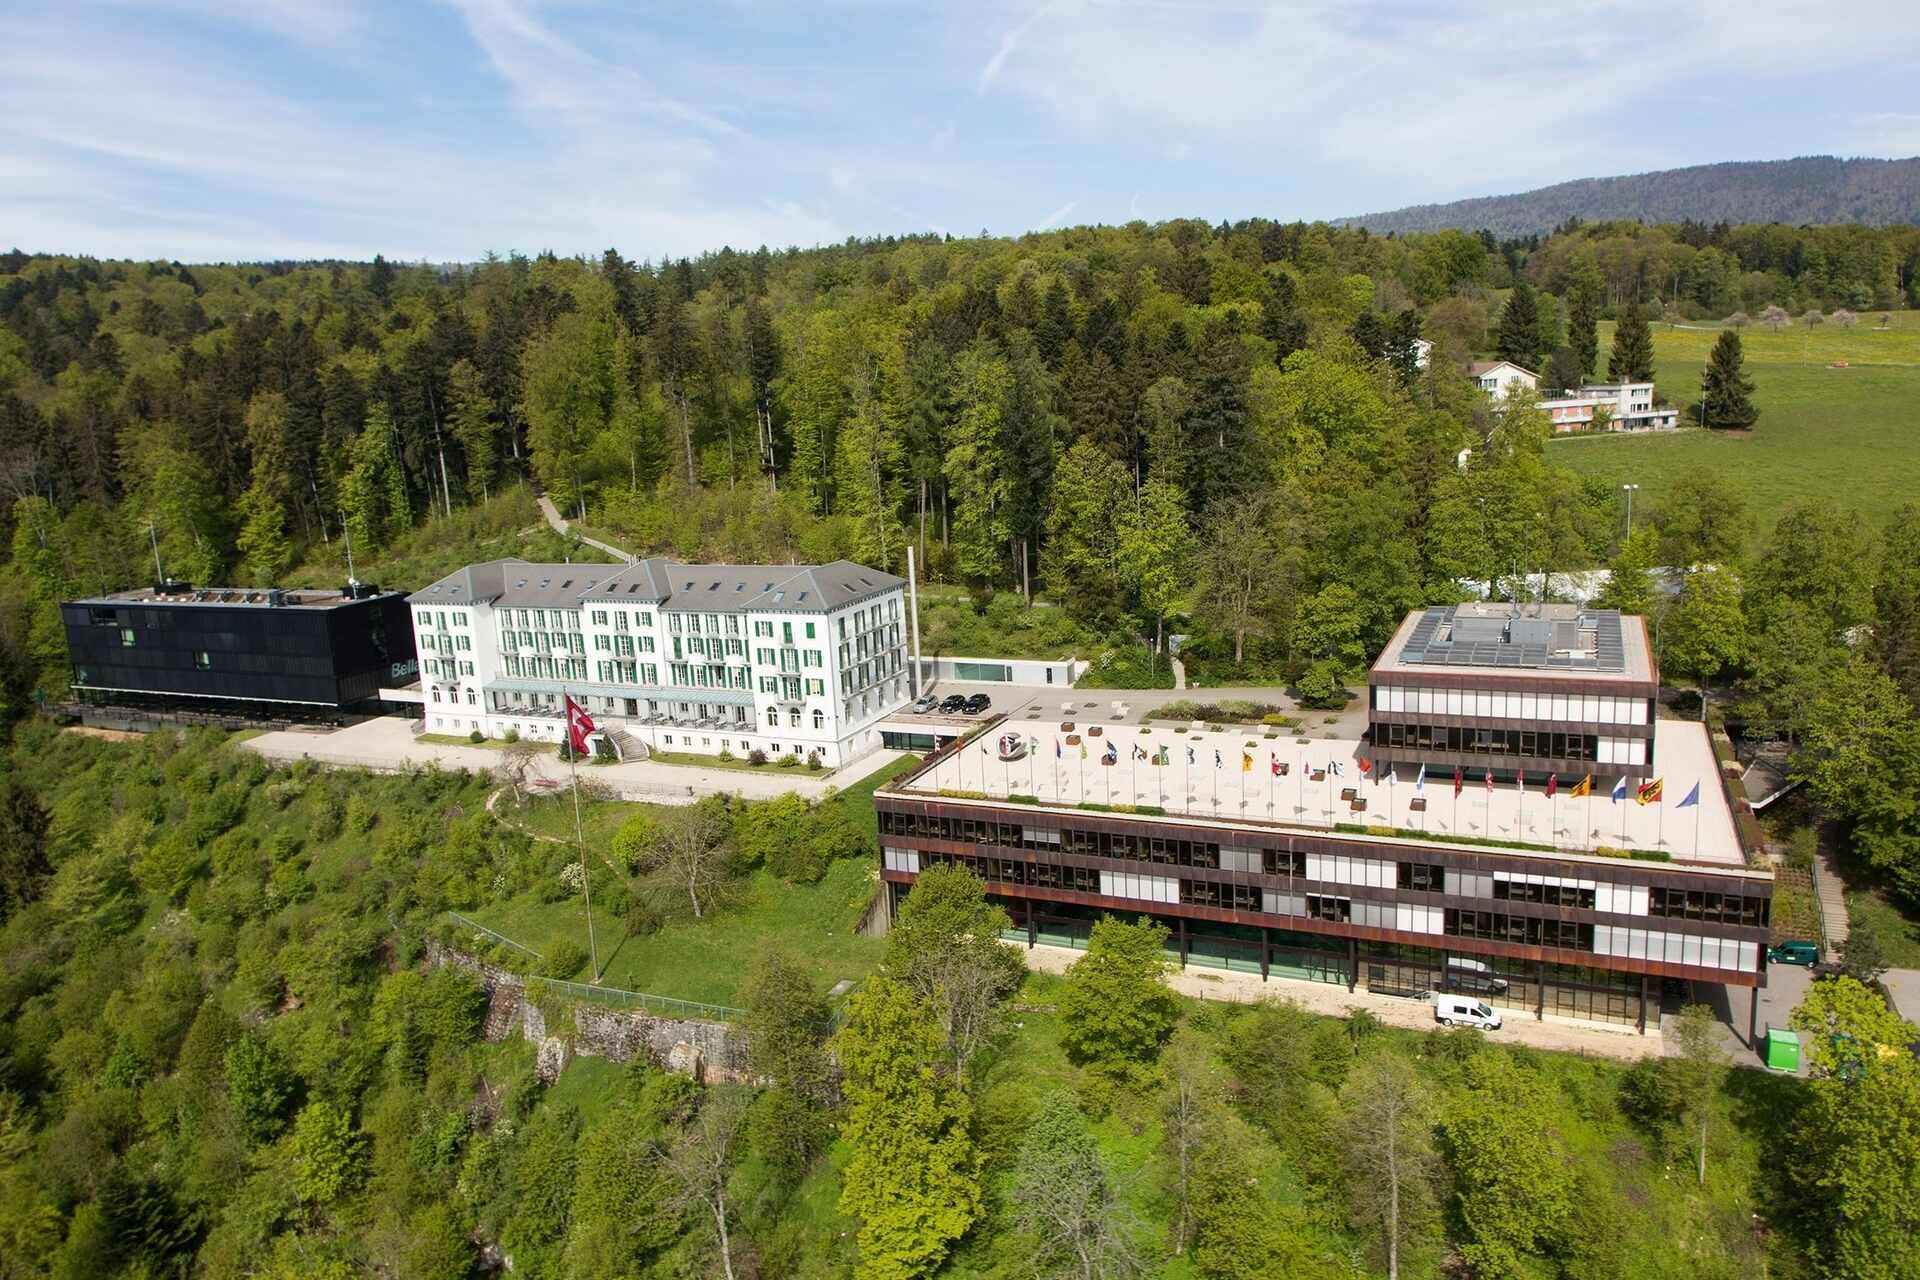 Sportske nauke: Savezni ured za sport (BASPO) Švicarske Konfederacije nalazi se u Macolinu